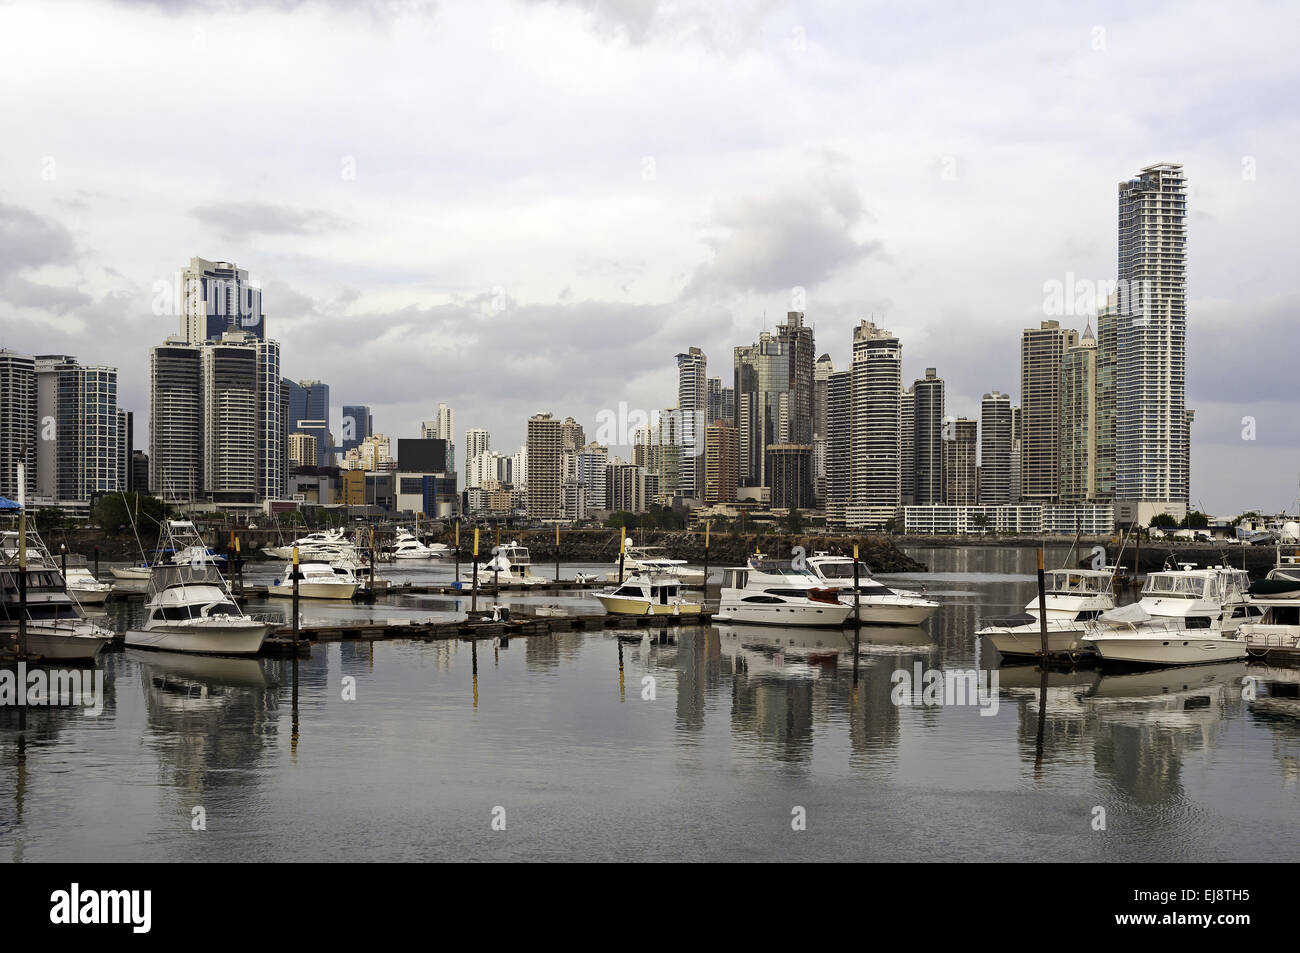 Panama City skyline, Panama. Stock Photo